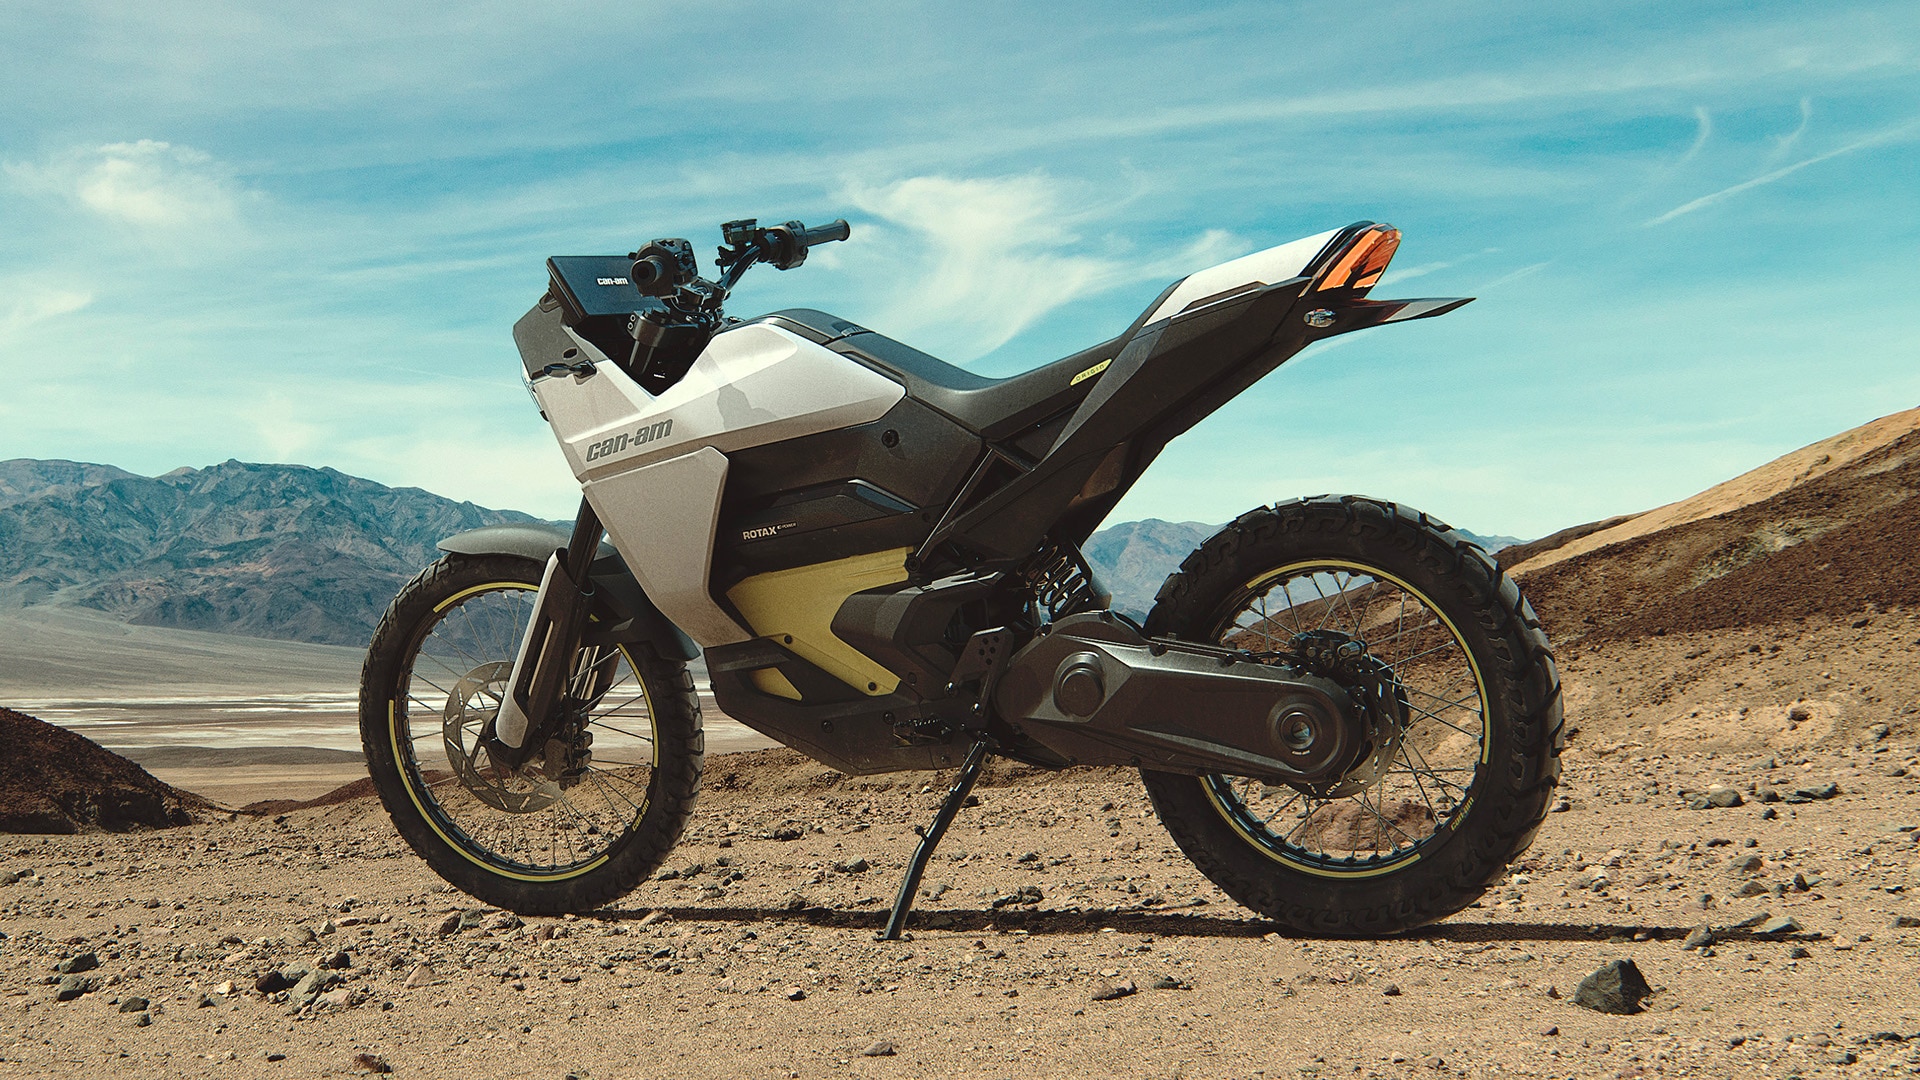 Uma Motocicleta Can-Am Origin estacionado no deserto.